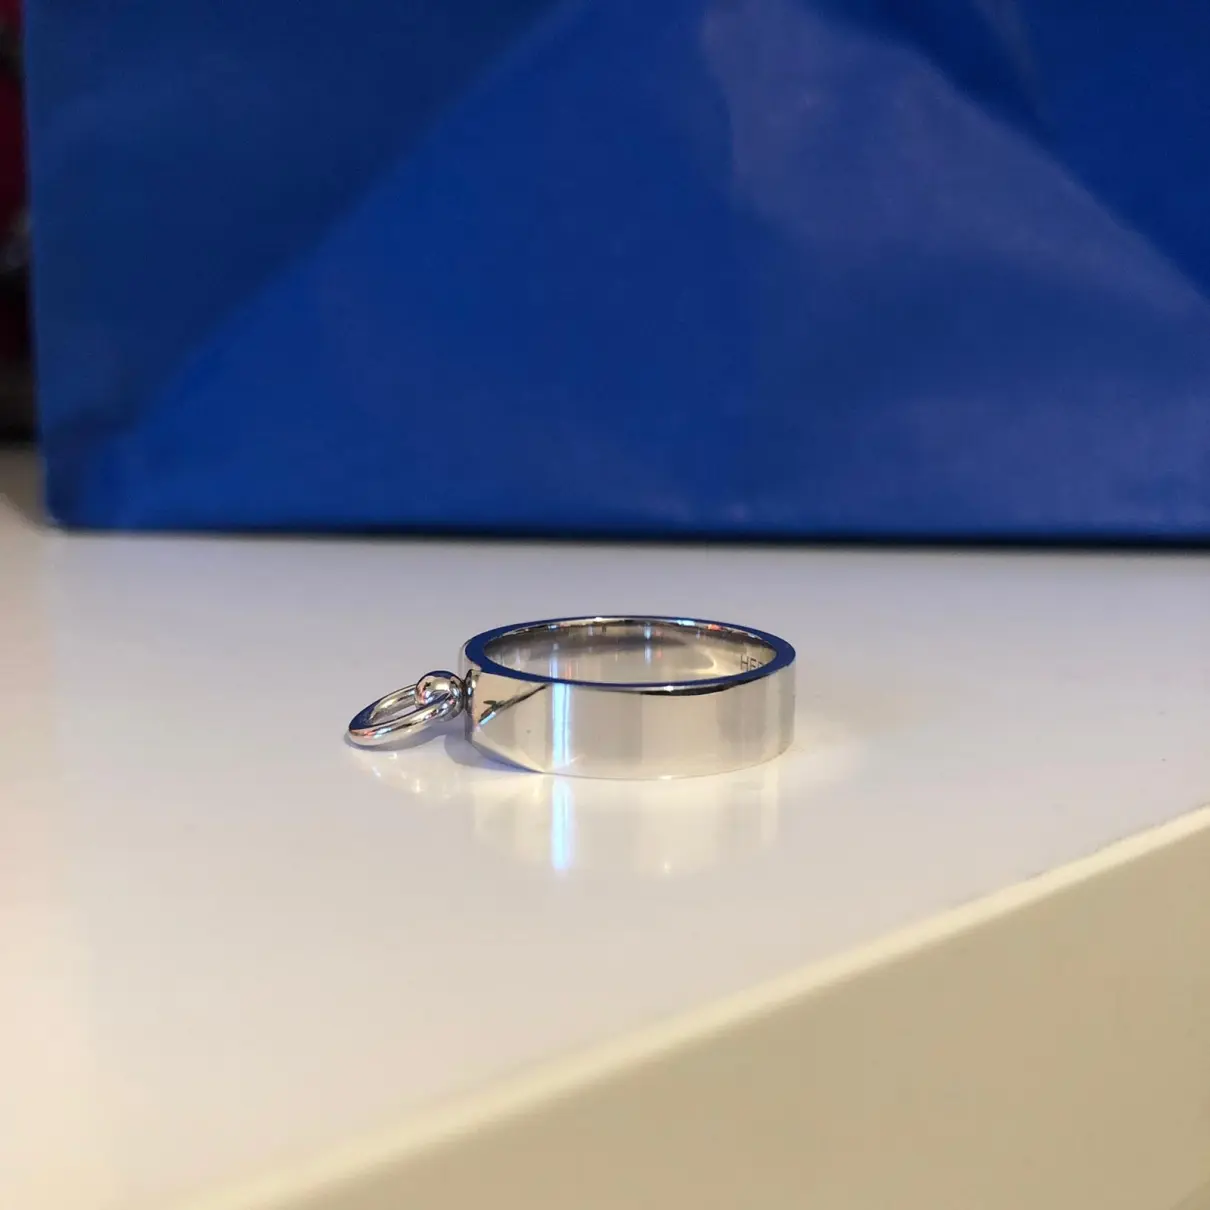 Hermès Collier de chien  white gold ring for sale